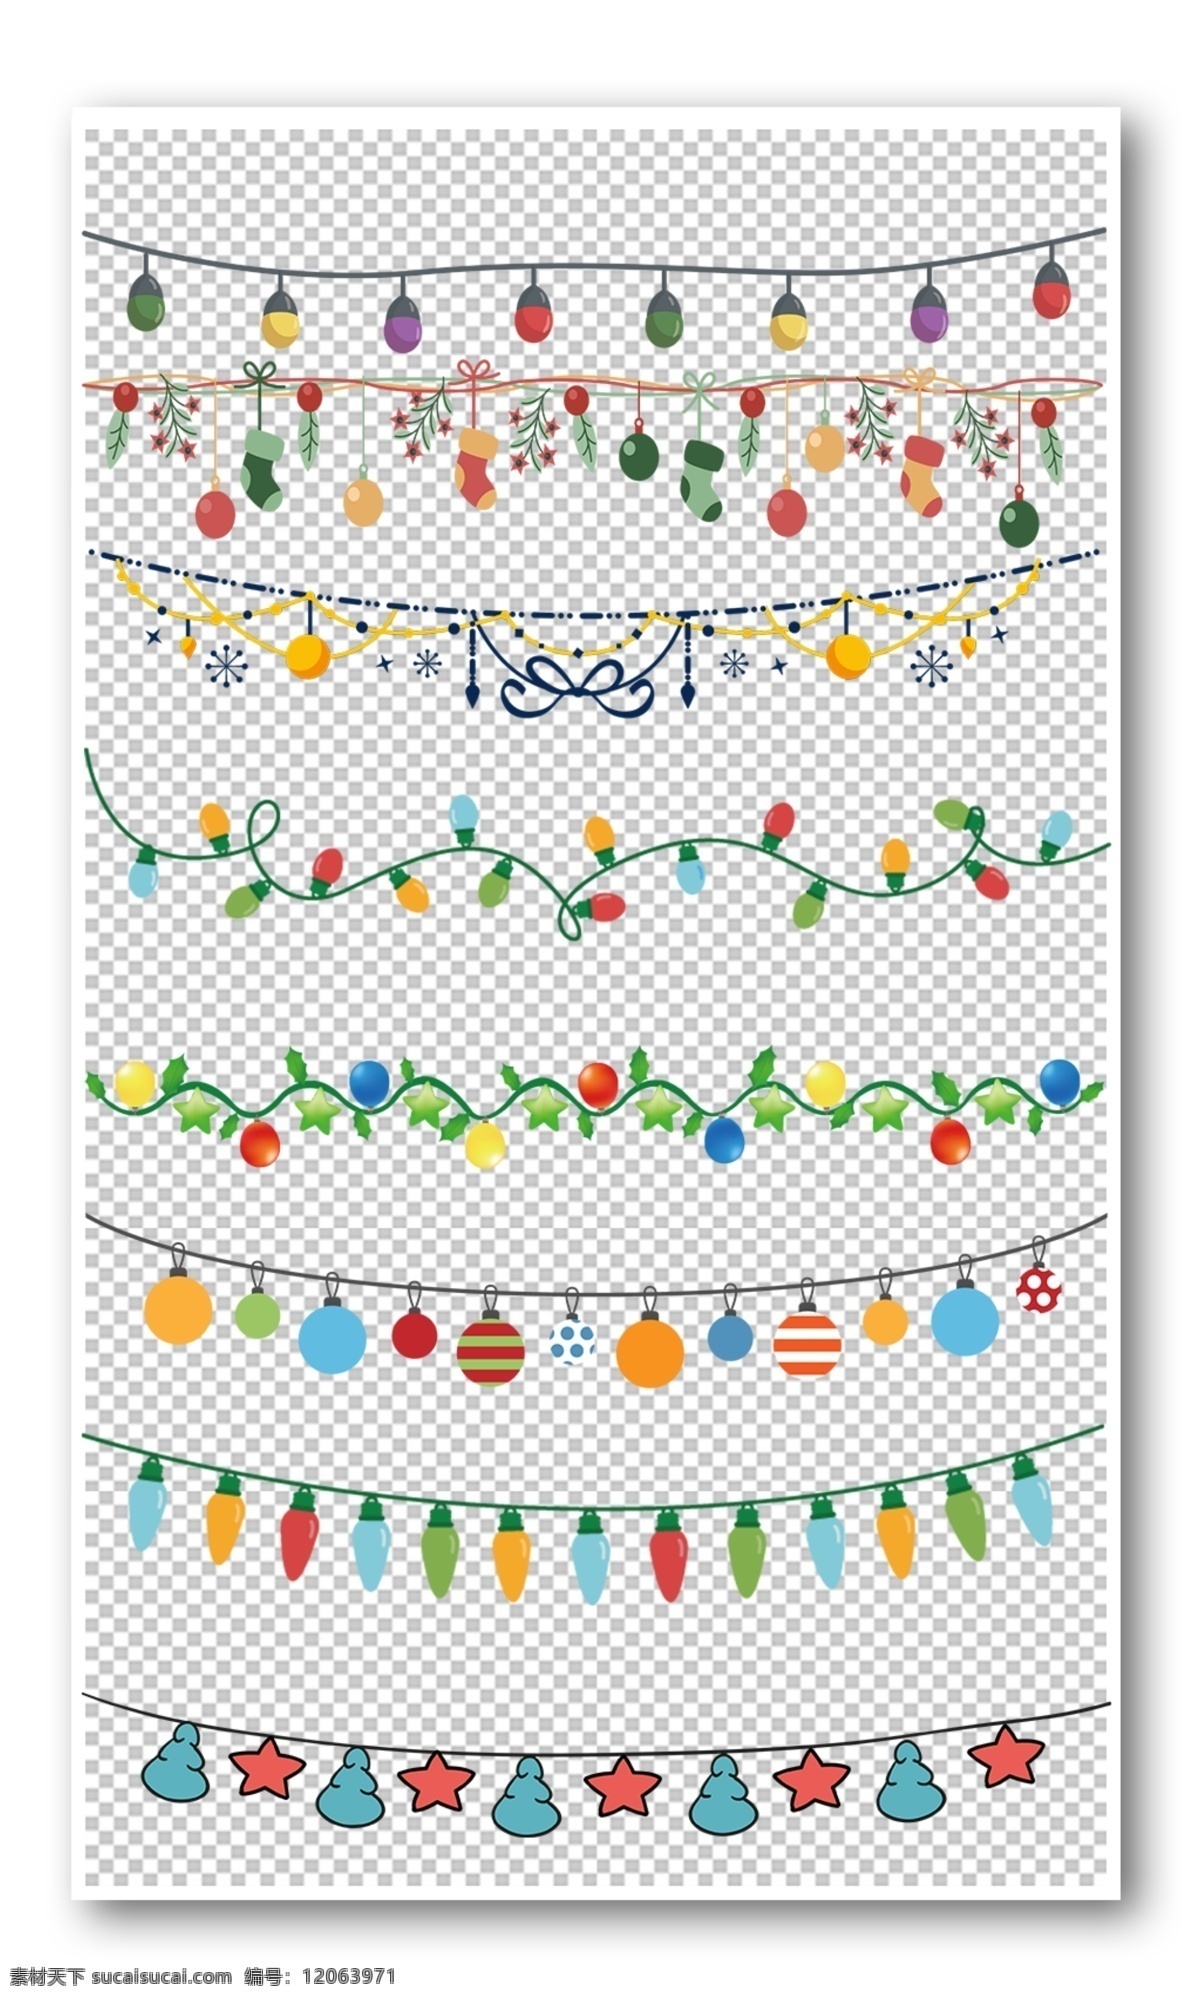 圣诞 彩灯 装饰 花纹 边框 元素 可爱 卡通 动物 吊灯 彩旗 设计元素 分层